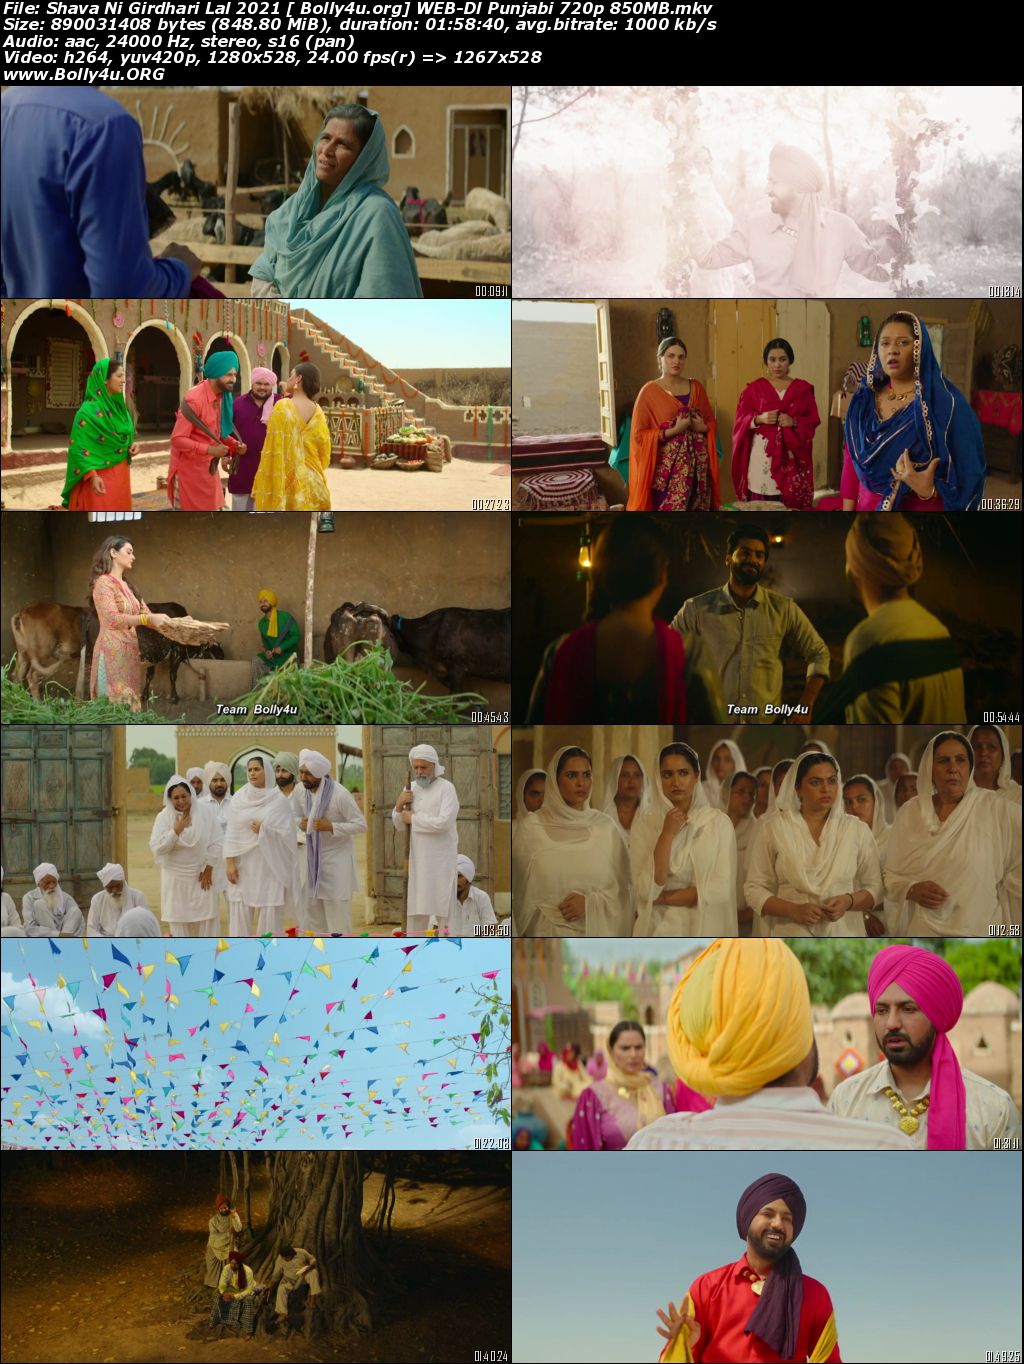 Shava Ni Girdhari Lal 2021 WEB-DL 850Mb Punjabi Movie Download 720p